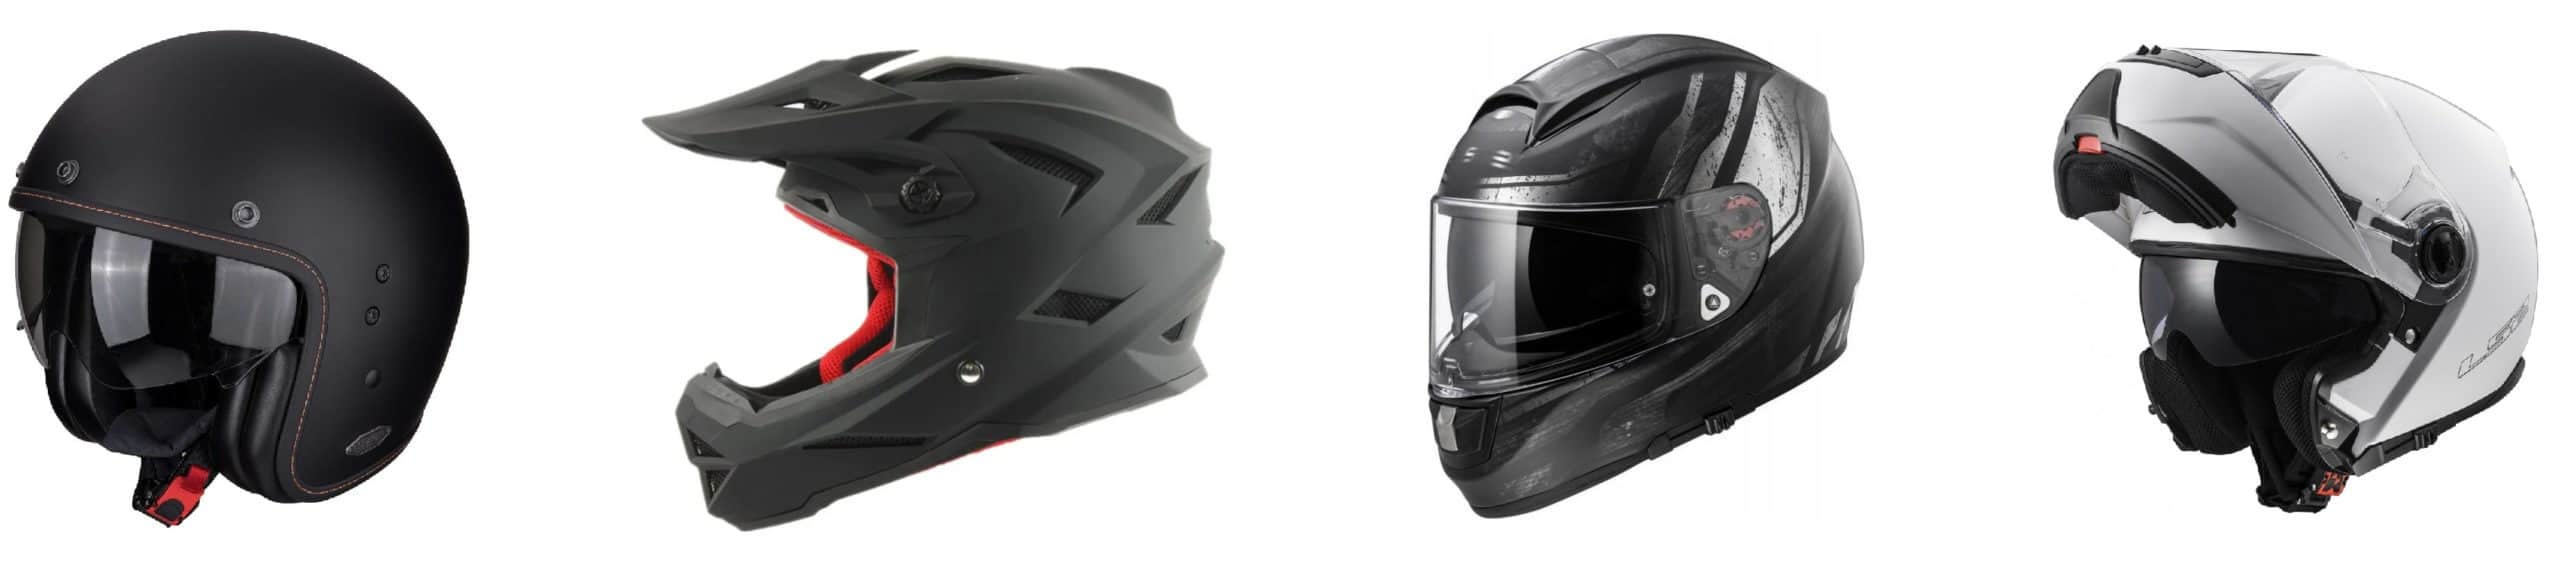 5 лучших шлемов для квадроцикла — рейтинг 2021